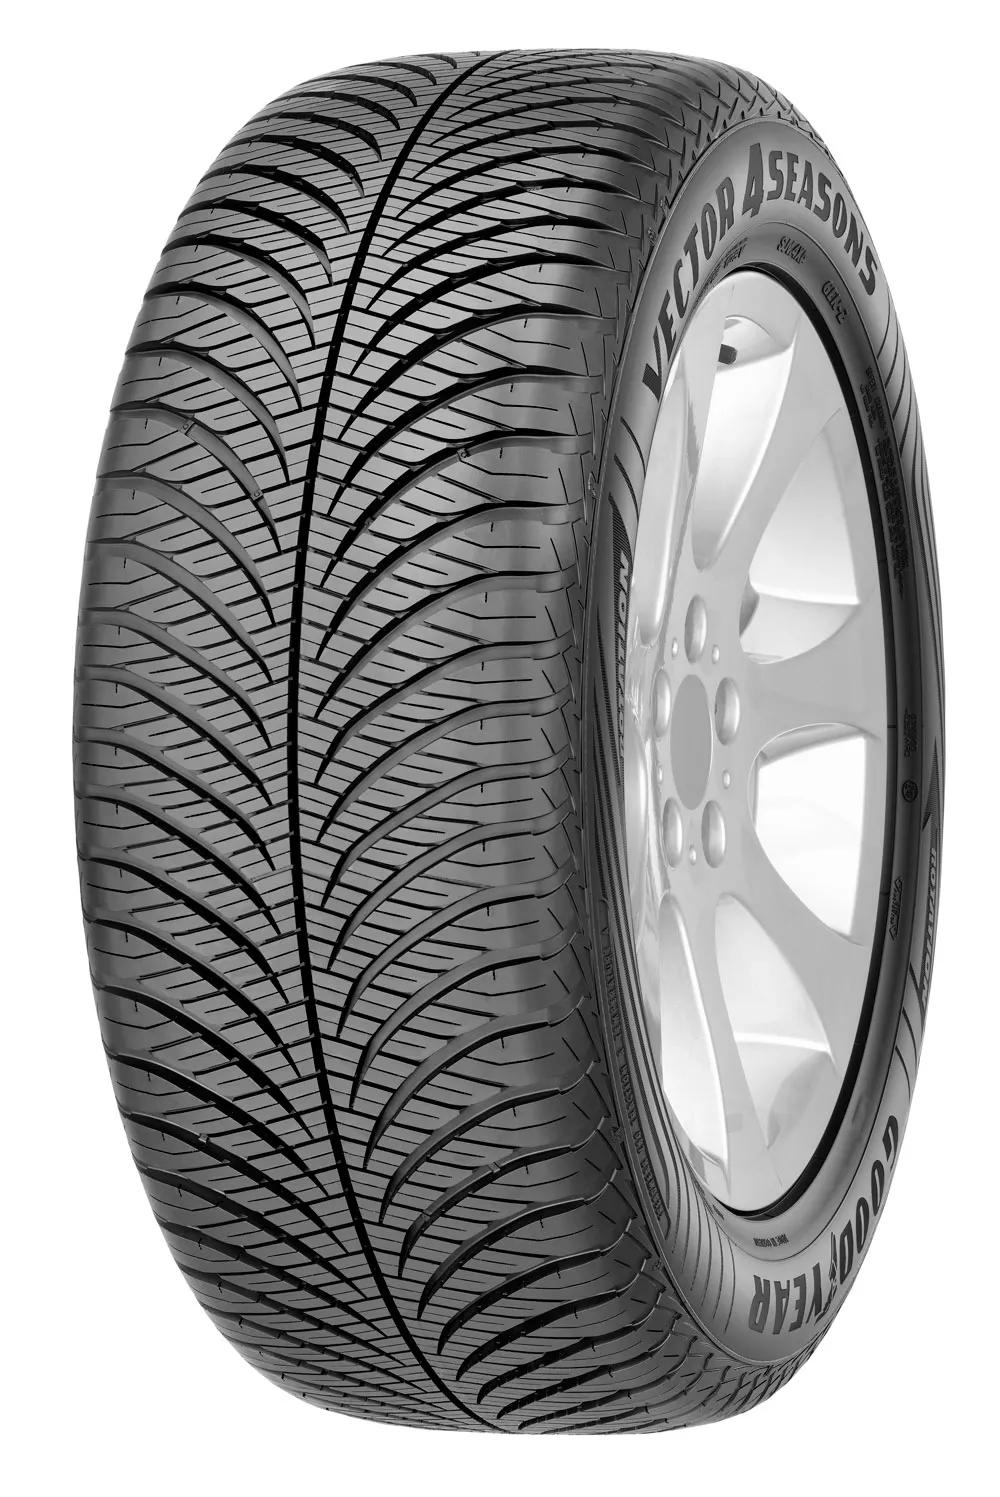 215/60R17 Goodyear Vector 4Seasons All-Season 96V Tyre